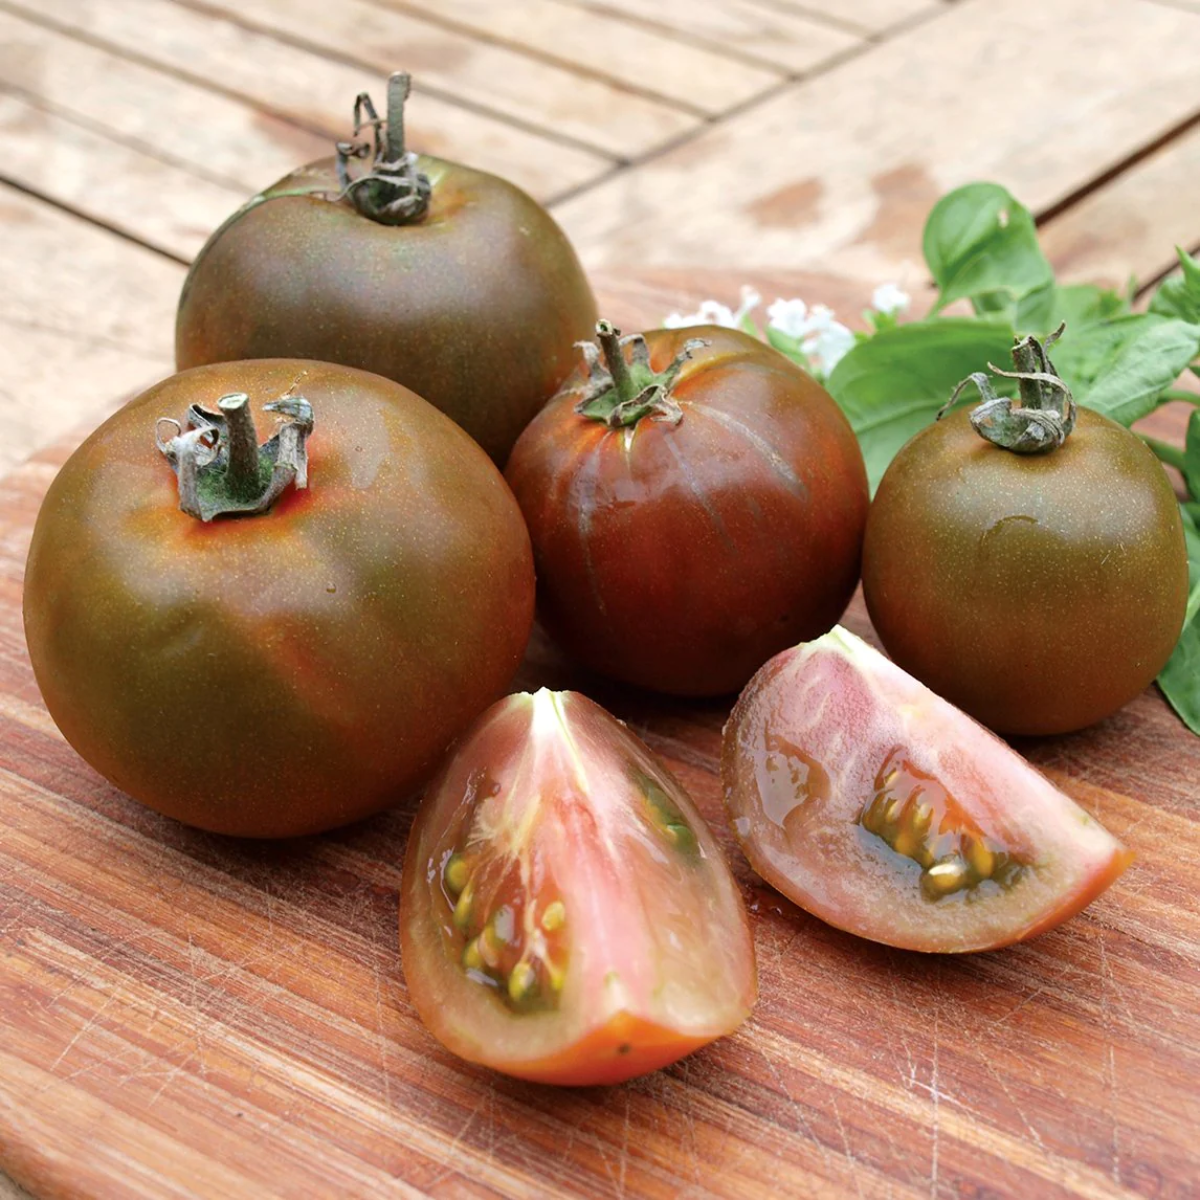 rot schwarze tomaten auf einem hölzernen schneidebrett neben den basilikumblättern